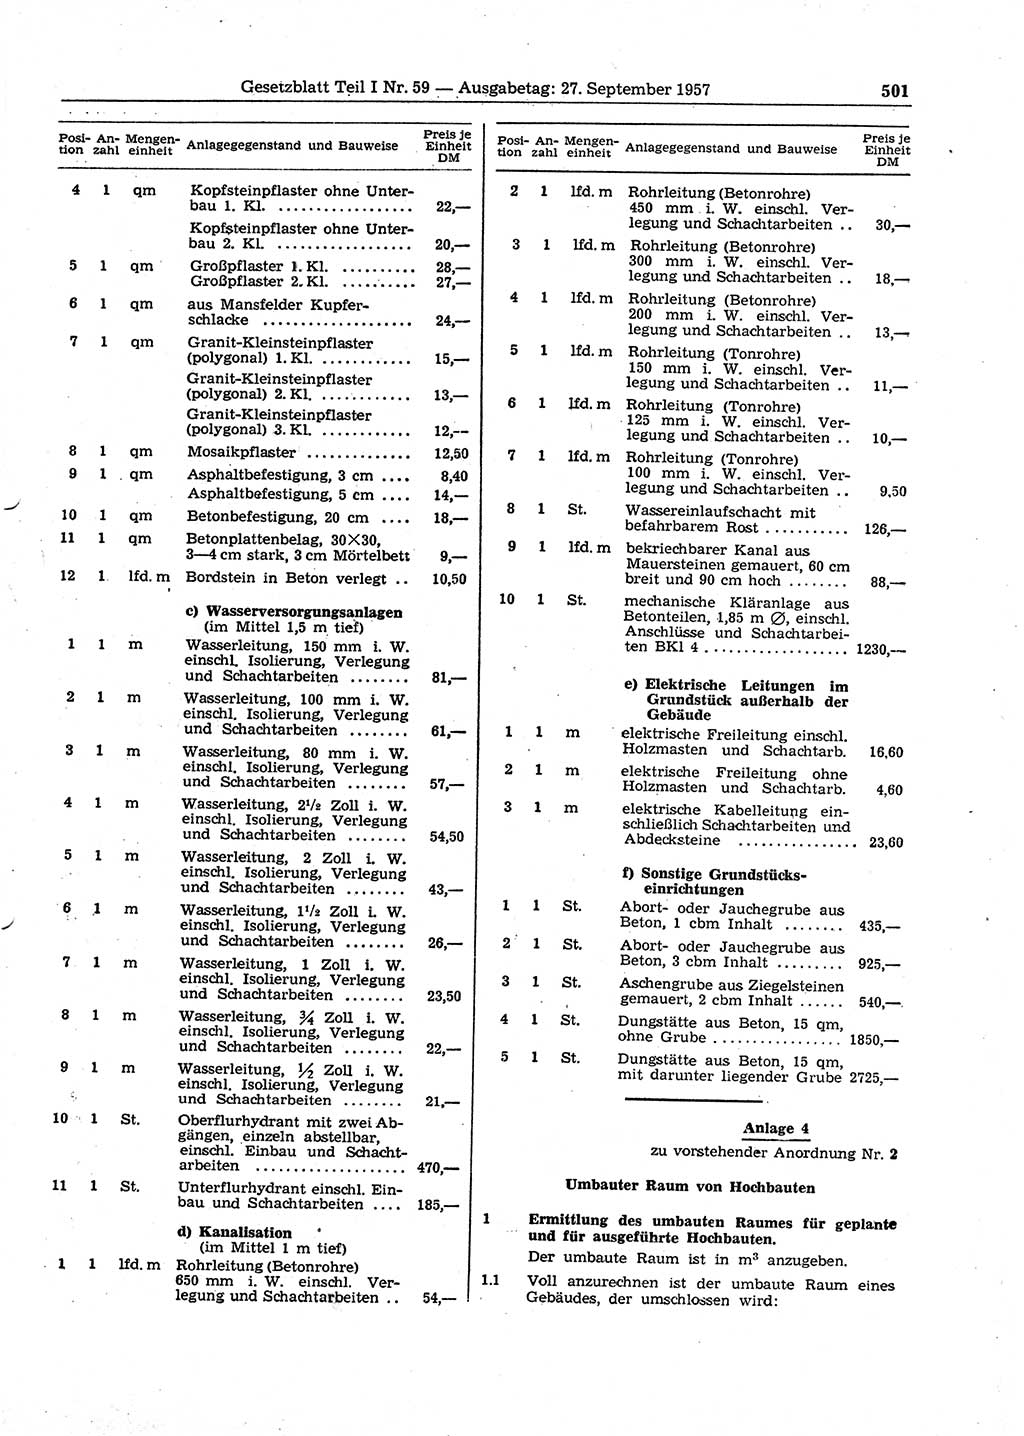 Gesetzblatt (GBl.) der Deutschen Demokratischen Republik (DDR) Teil Ⅰ 1957, Seite 501 (GBl. DDR Ⅰ 1957, S. 501)